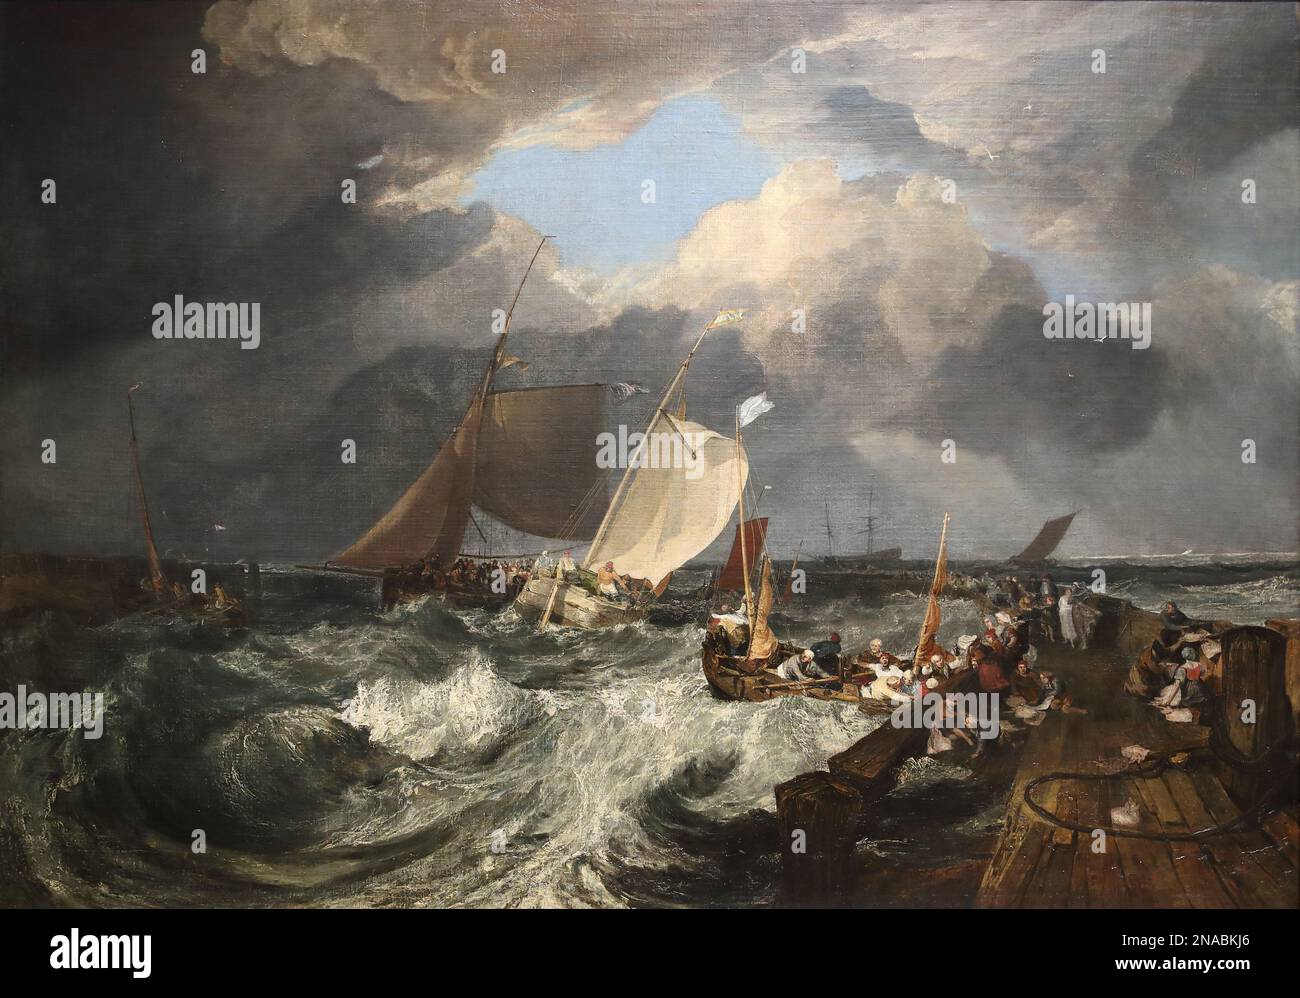 Calais Pier: Un paquet anglais arrivant par le peintre romantique anglais Joseph Mallord William Turner à la National Gallery, Londres, Royaume-Uni Banque D'Images